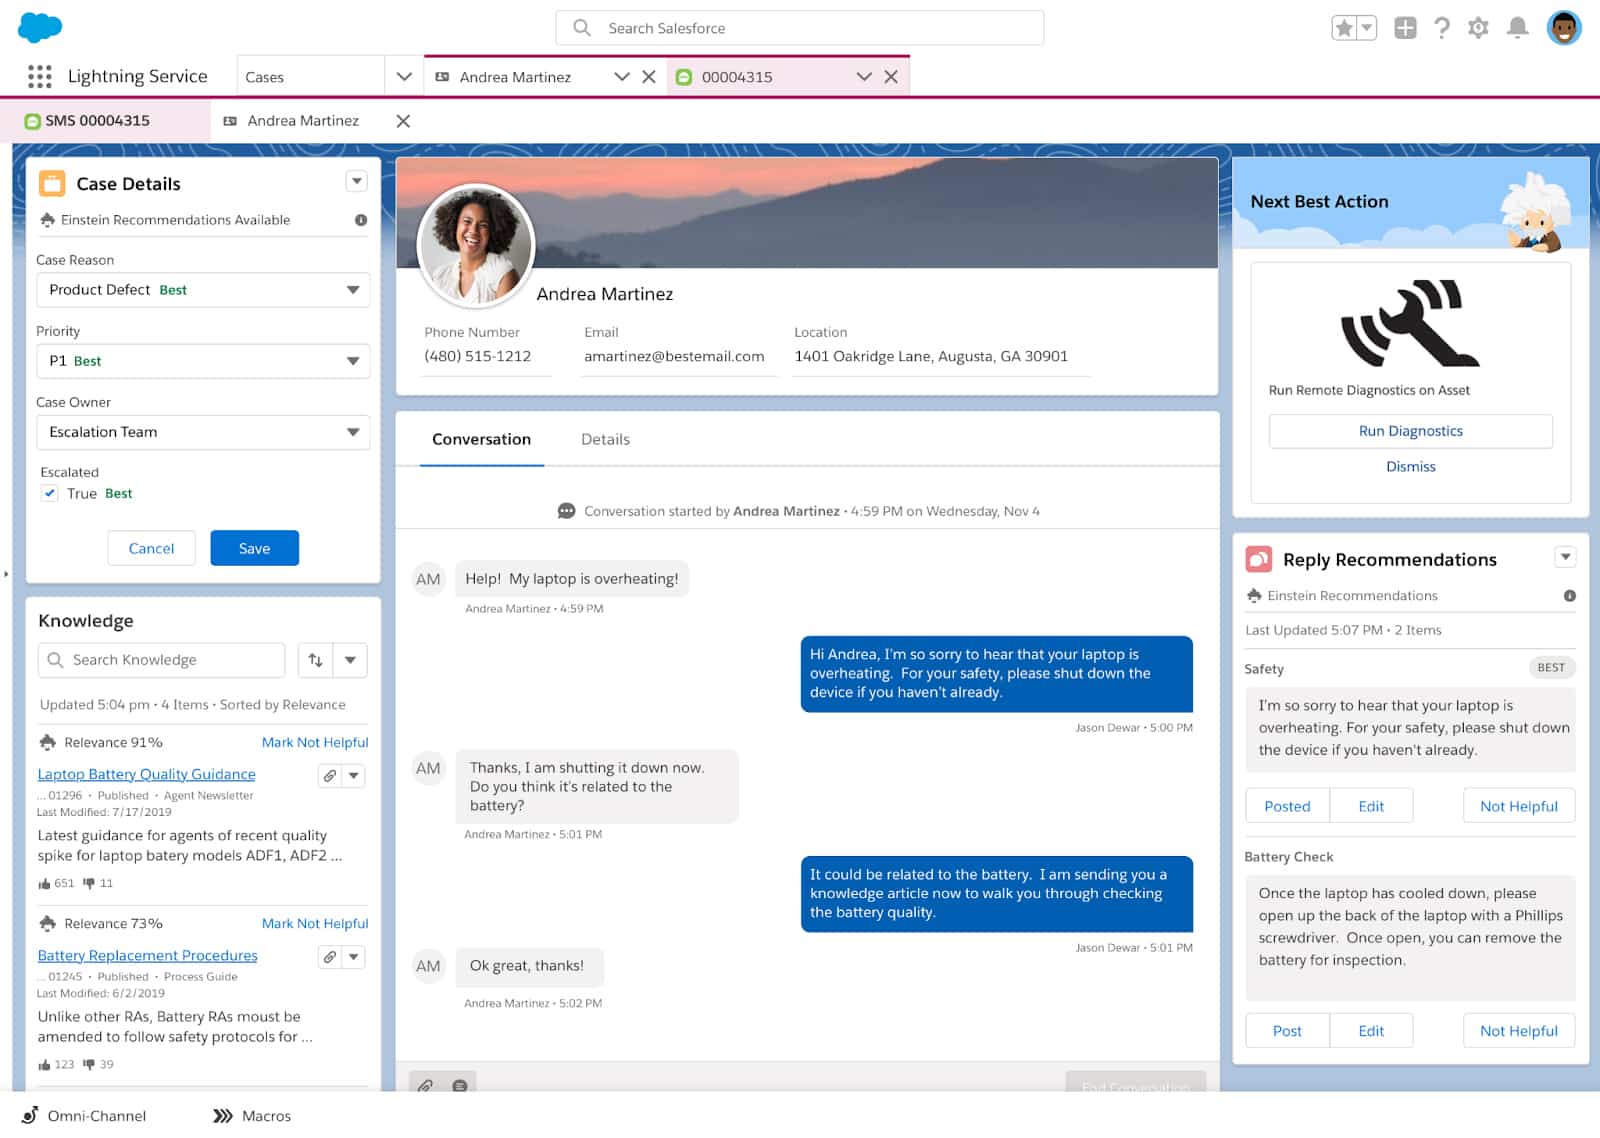 安德莉亚·马丁内斯简介与Salesforce上的对话样本。